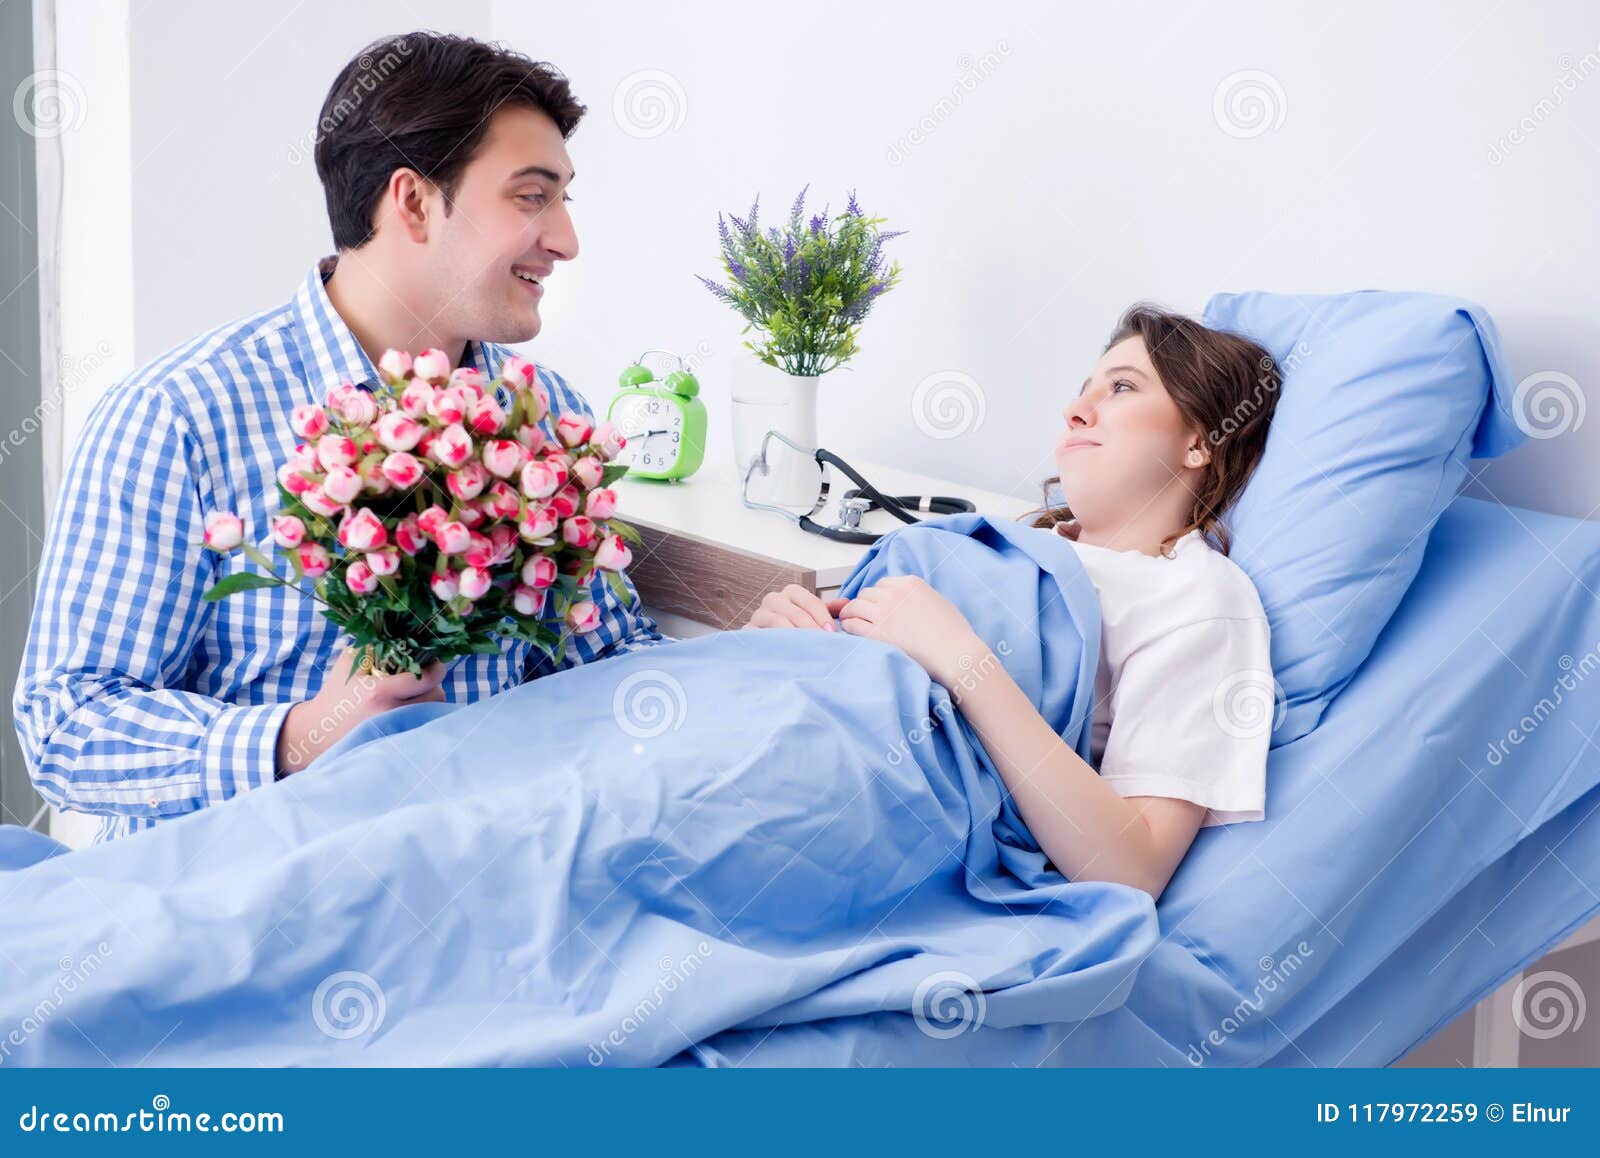 Жена навещает мужа. Мужчина навещает женщину в больнице. Жена навещает мужа в больнице. Жена в больнице муж навещает с цветами. Девушка навещает в больнице.